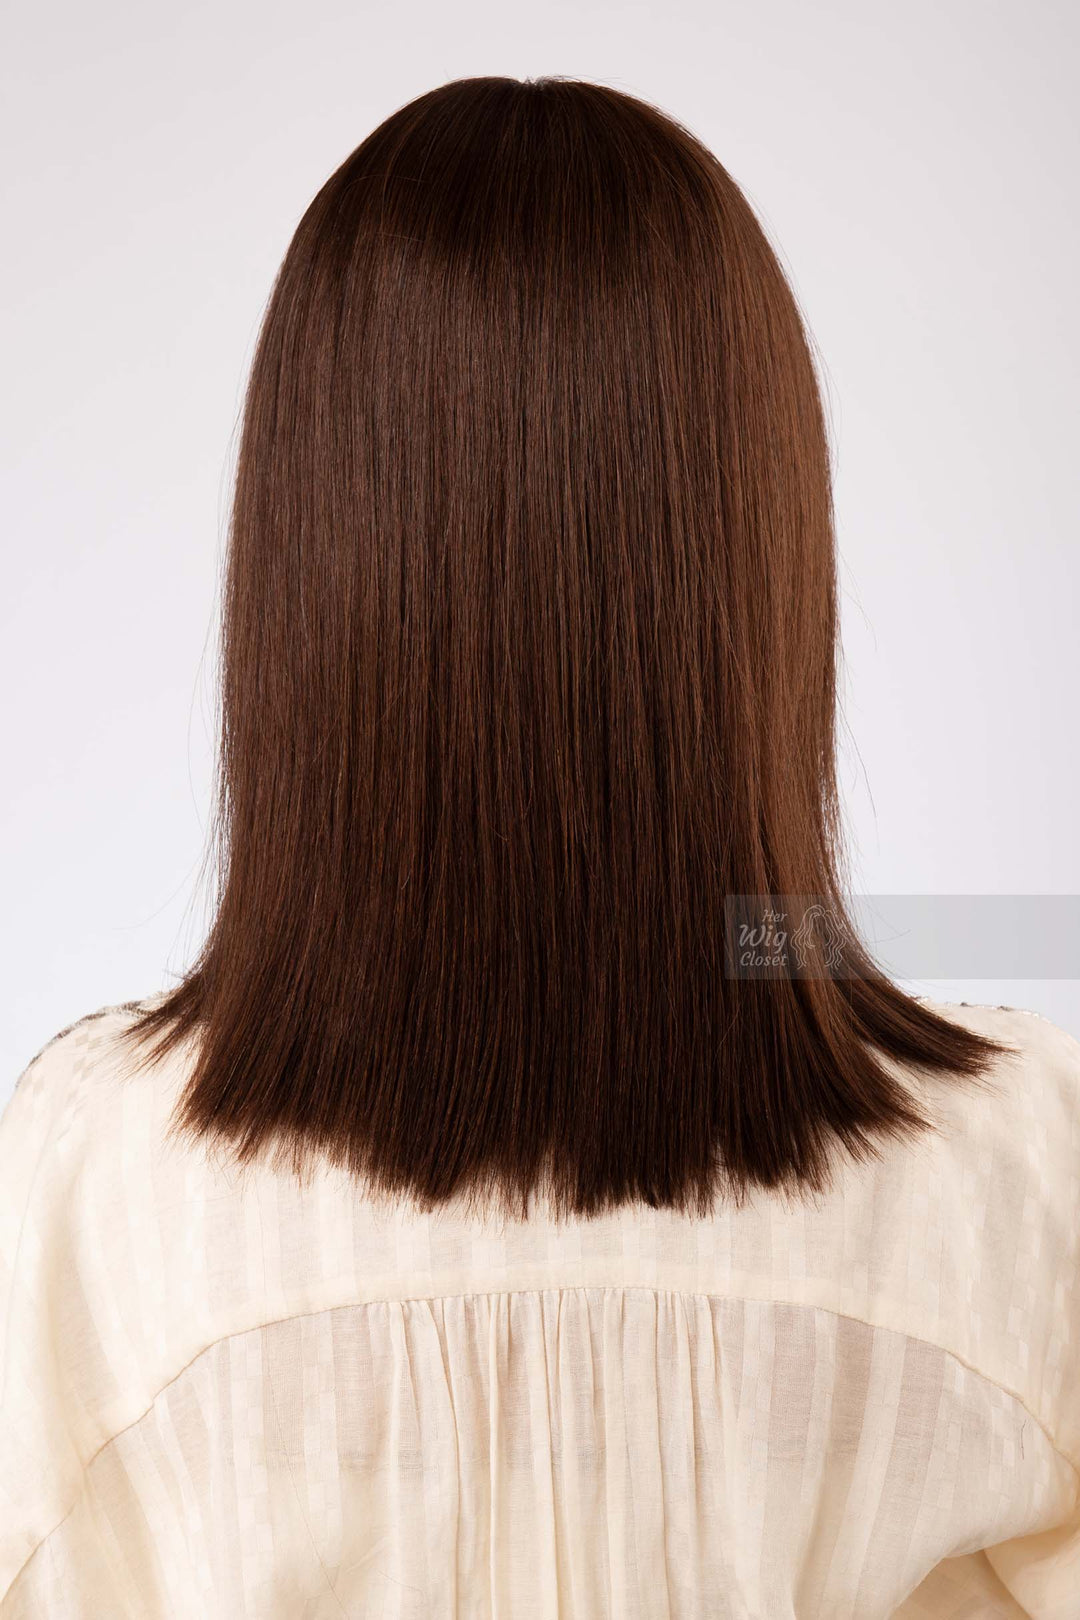 Natural Brown Medium Length Straight Bob Human Hair Wig with bangs